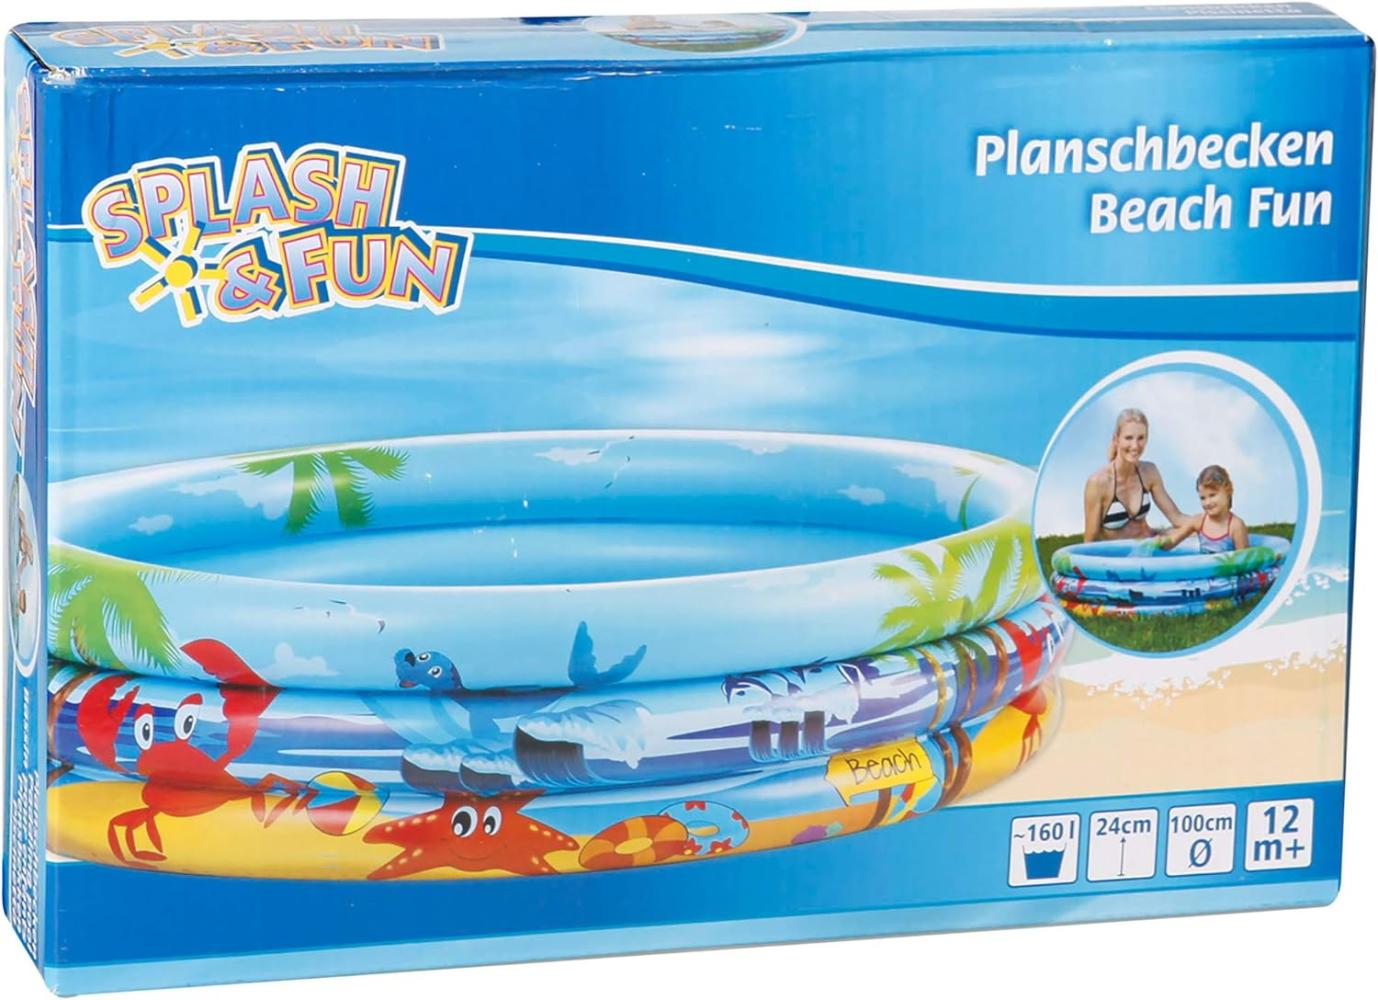 Splash & Fun Planschbecken Beach 100 cm Bild 1